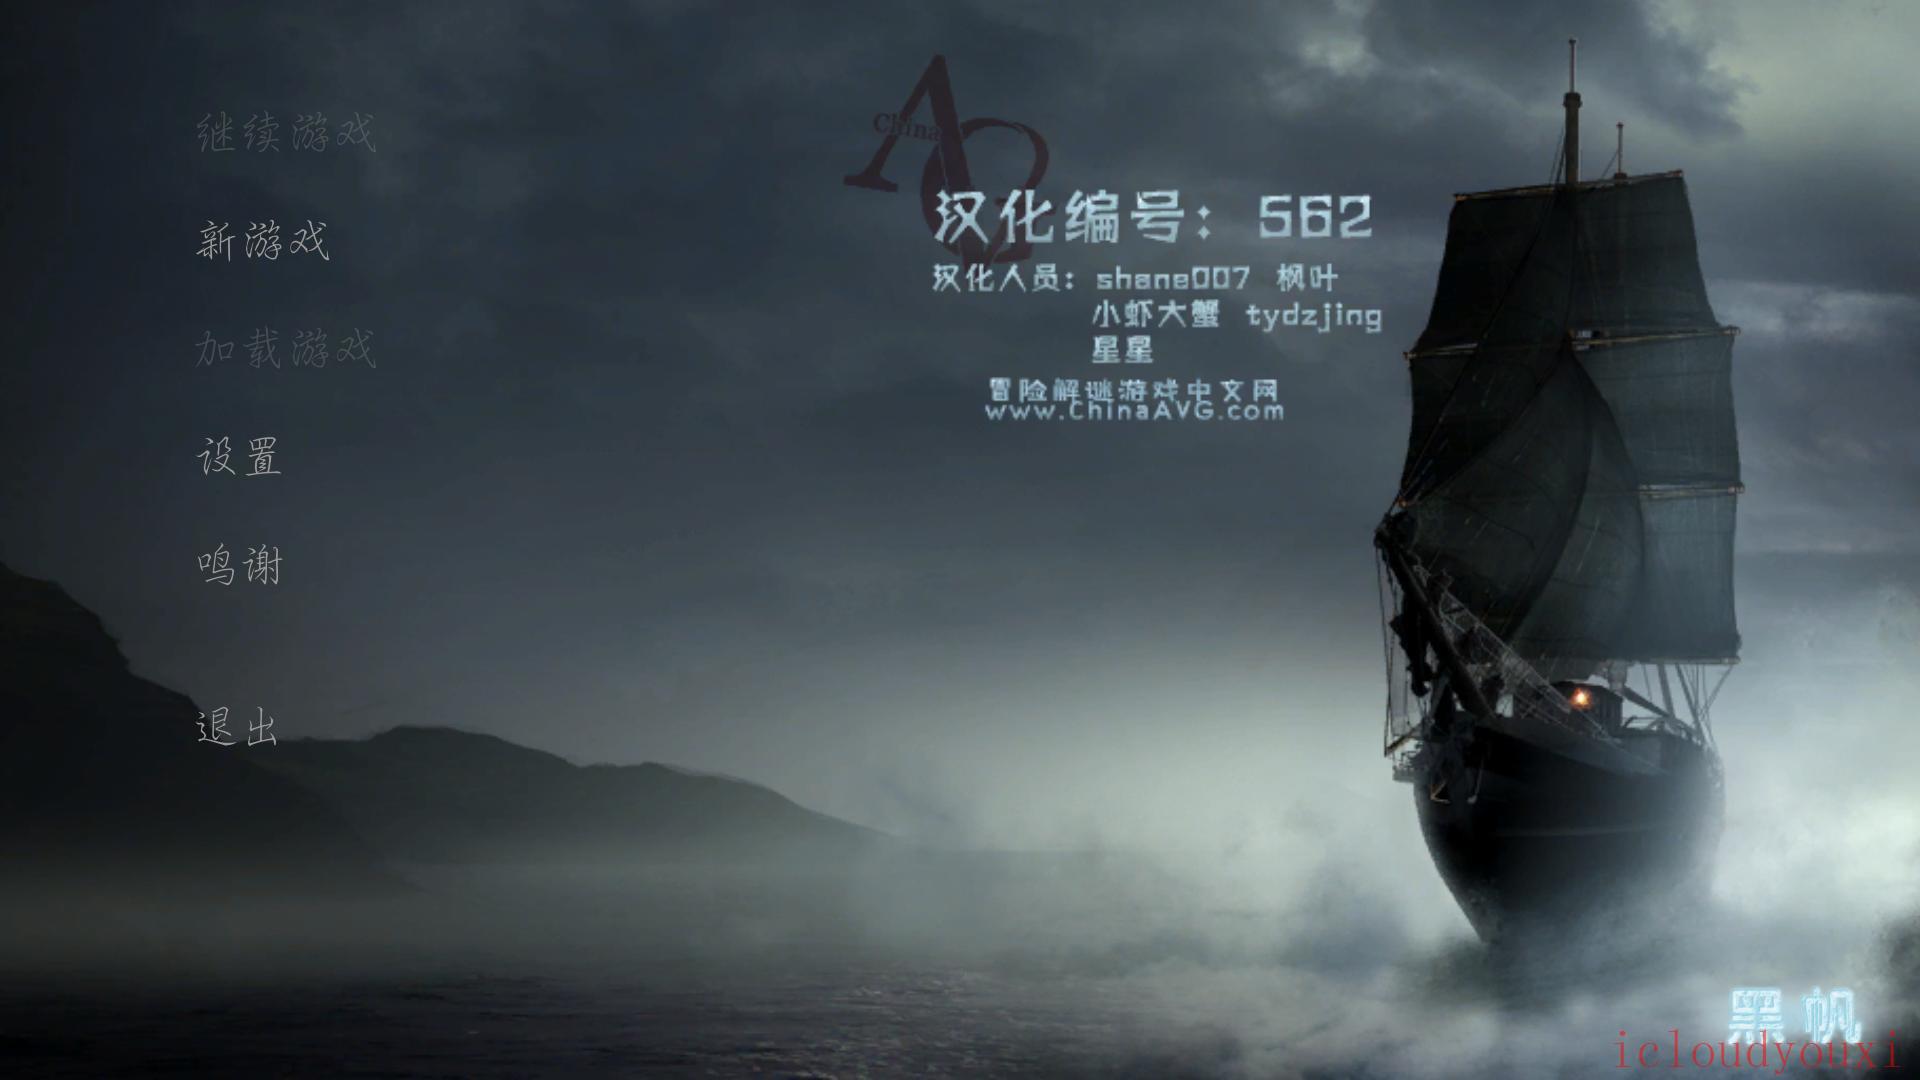 黑帆：鬼船简体中文云游戏截图1